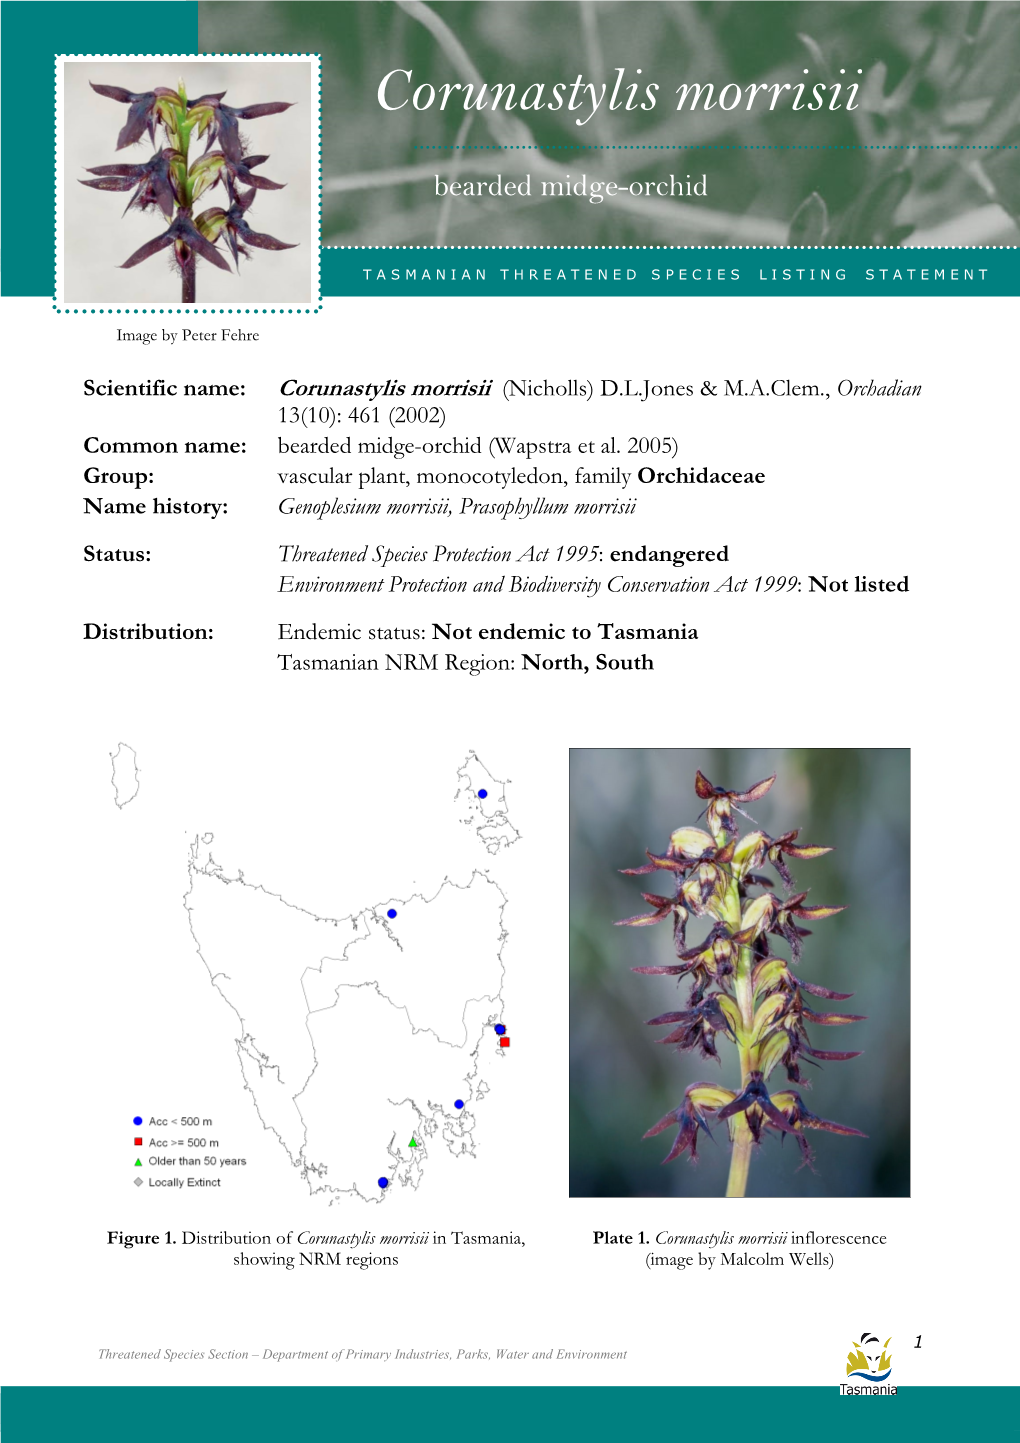 Corunastylis Morrisii Morrisii (Bearded Midge-Orchid)